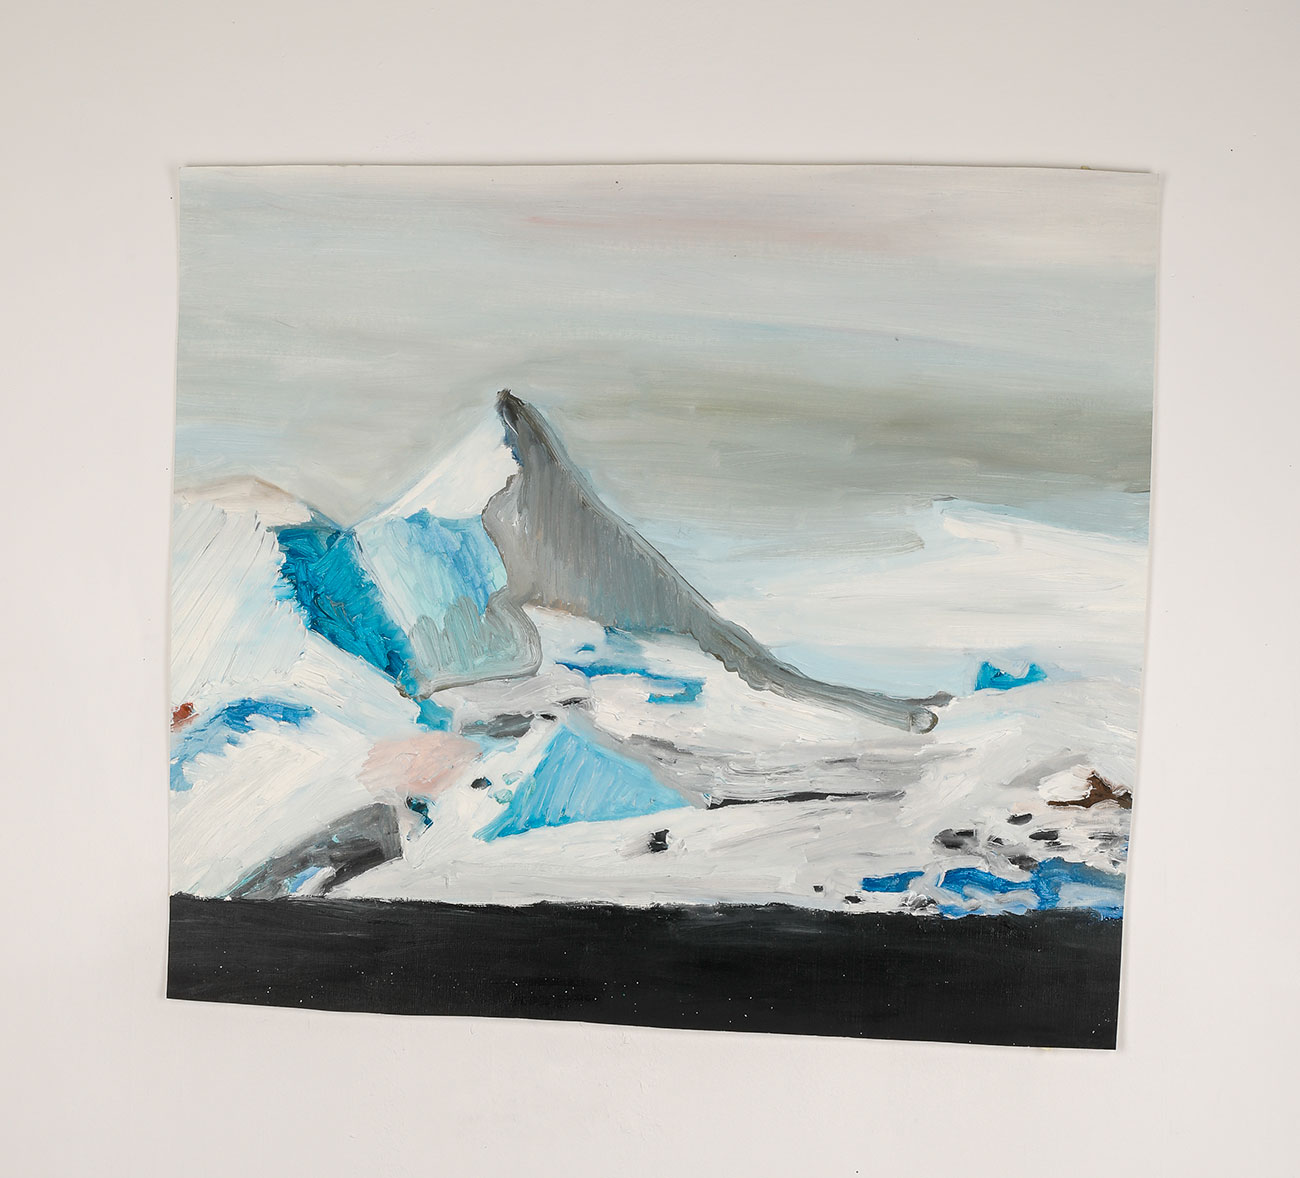 La Clusaz, 2017 - Oil on paper 50.5 x 56.5 cm